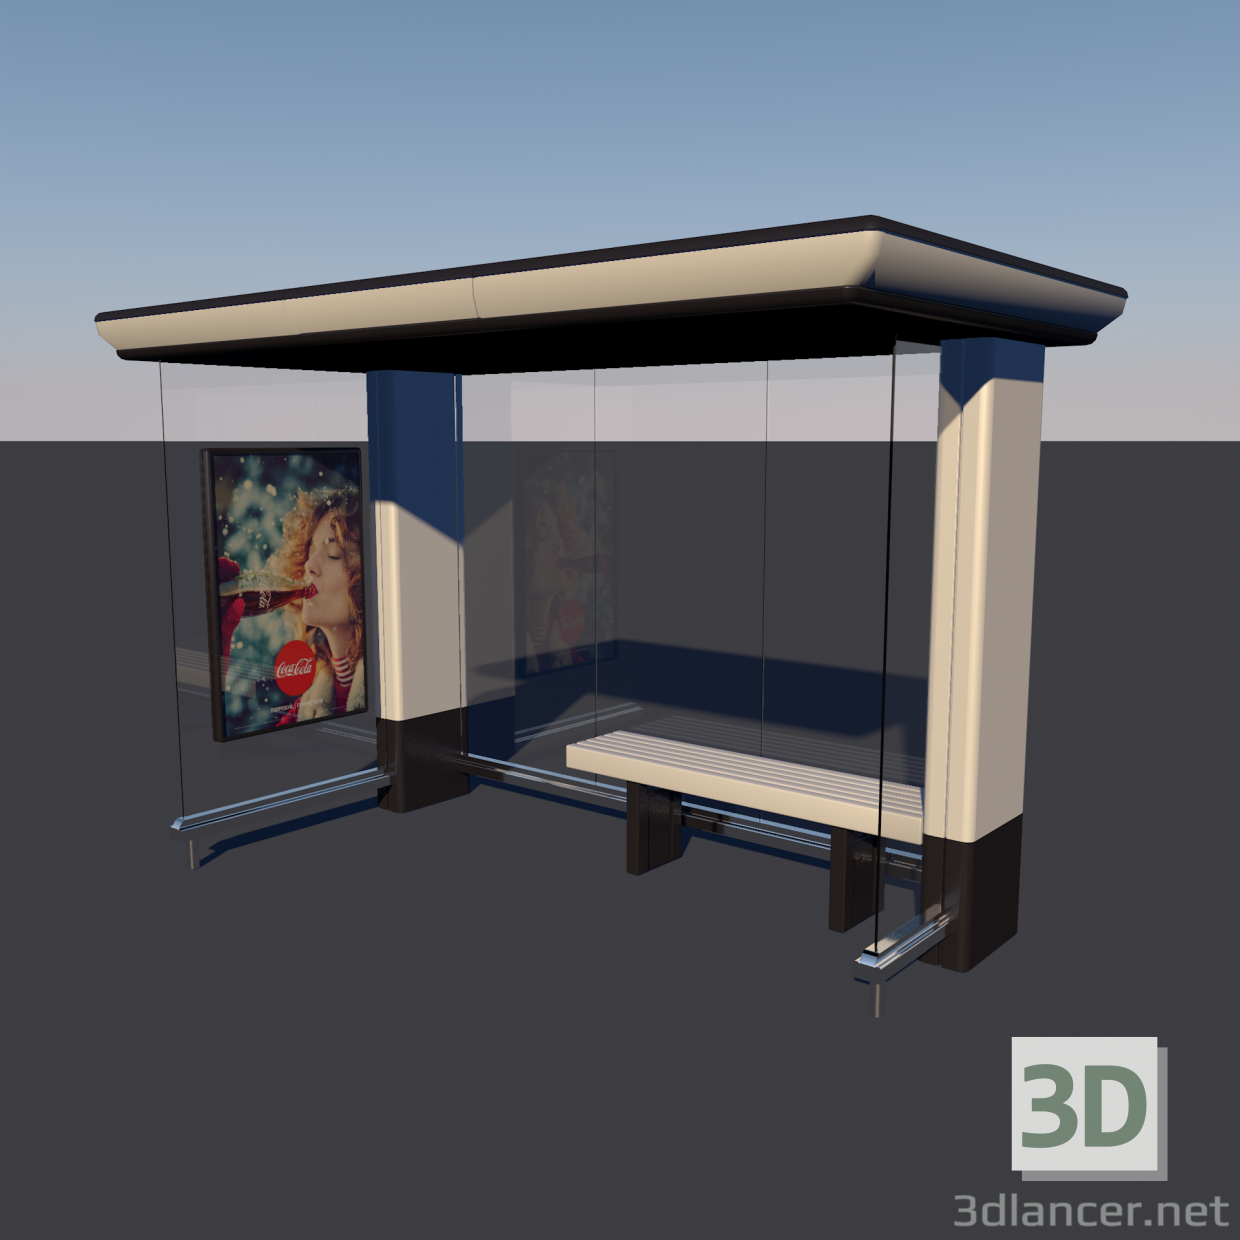 Parada de autobús Low-poly modelo 3D 3D modelo Compro - render